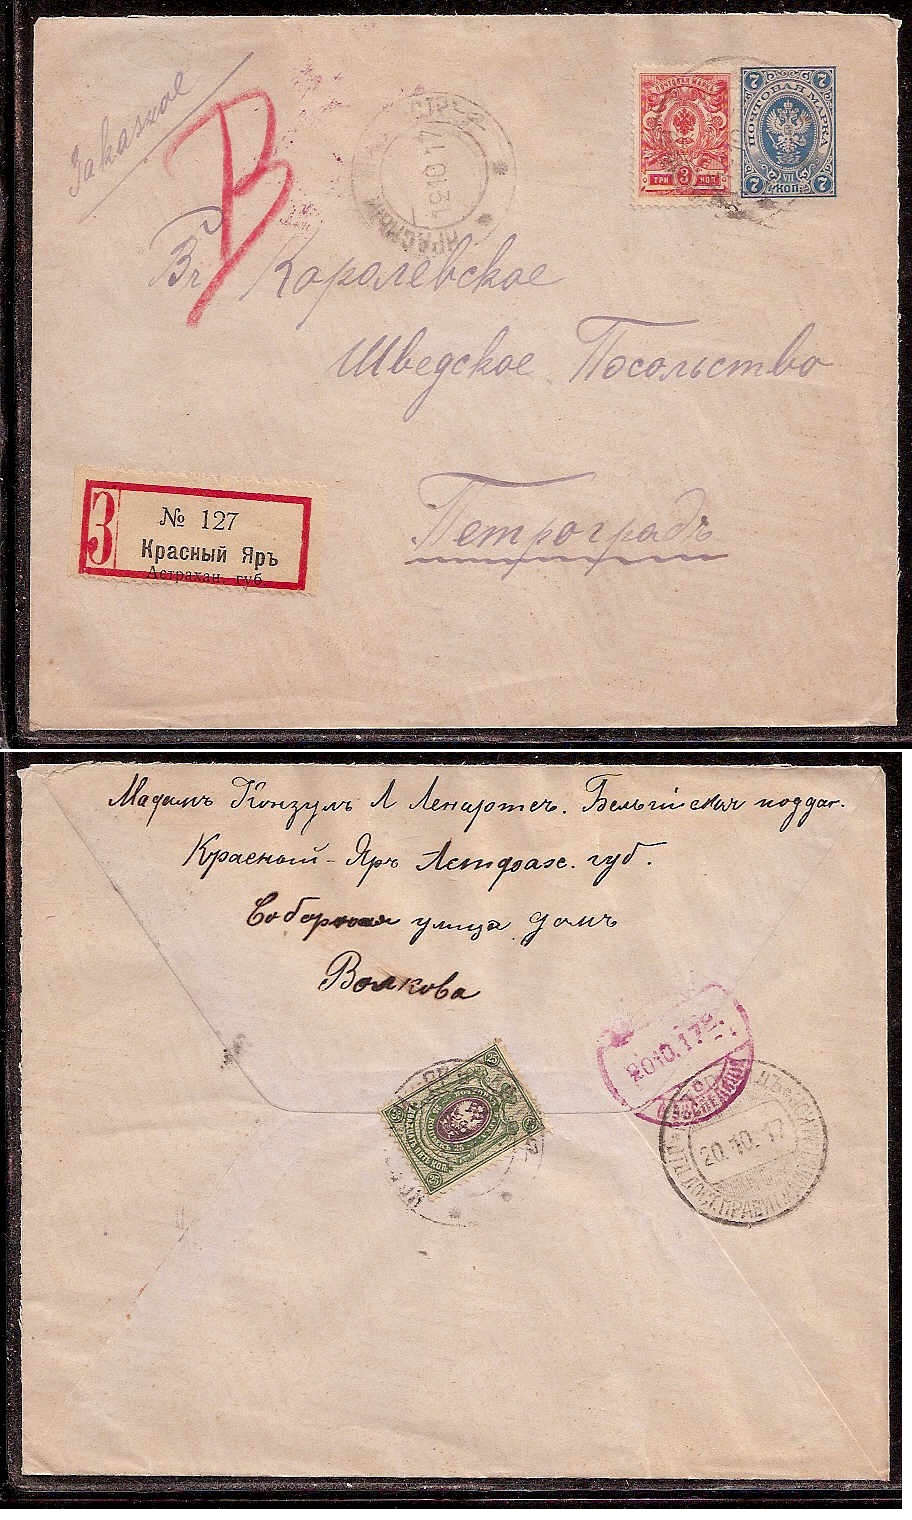 Russia Postal History - Gubernia Astrakhan gubernia Scott 11917 